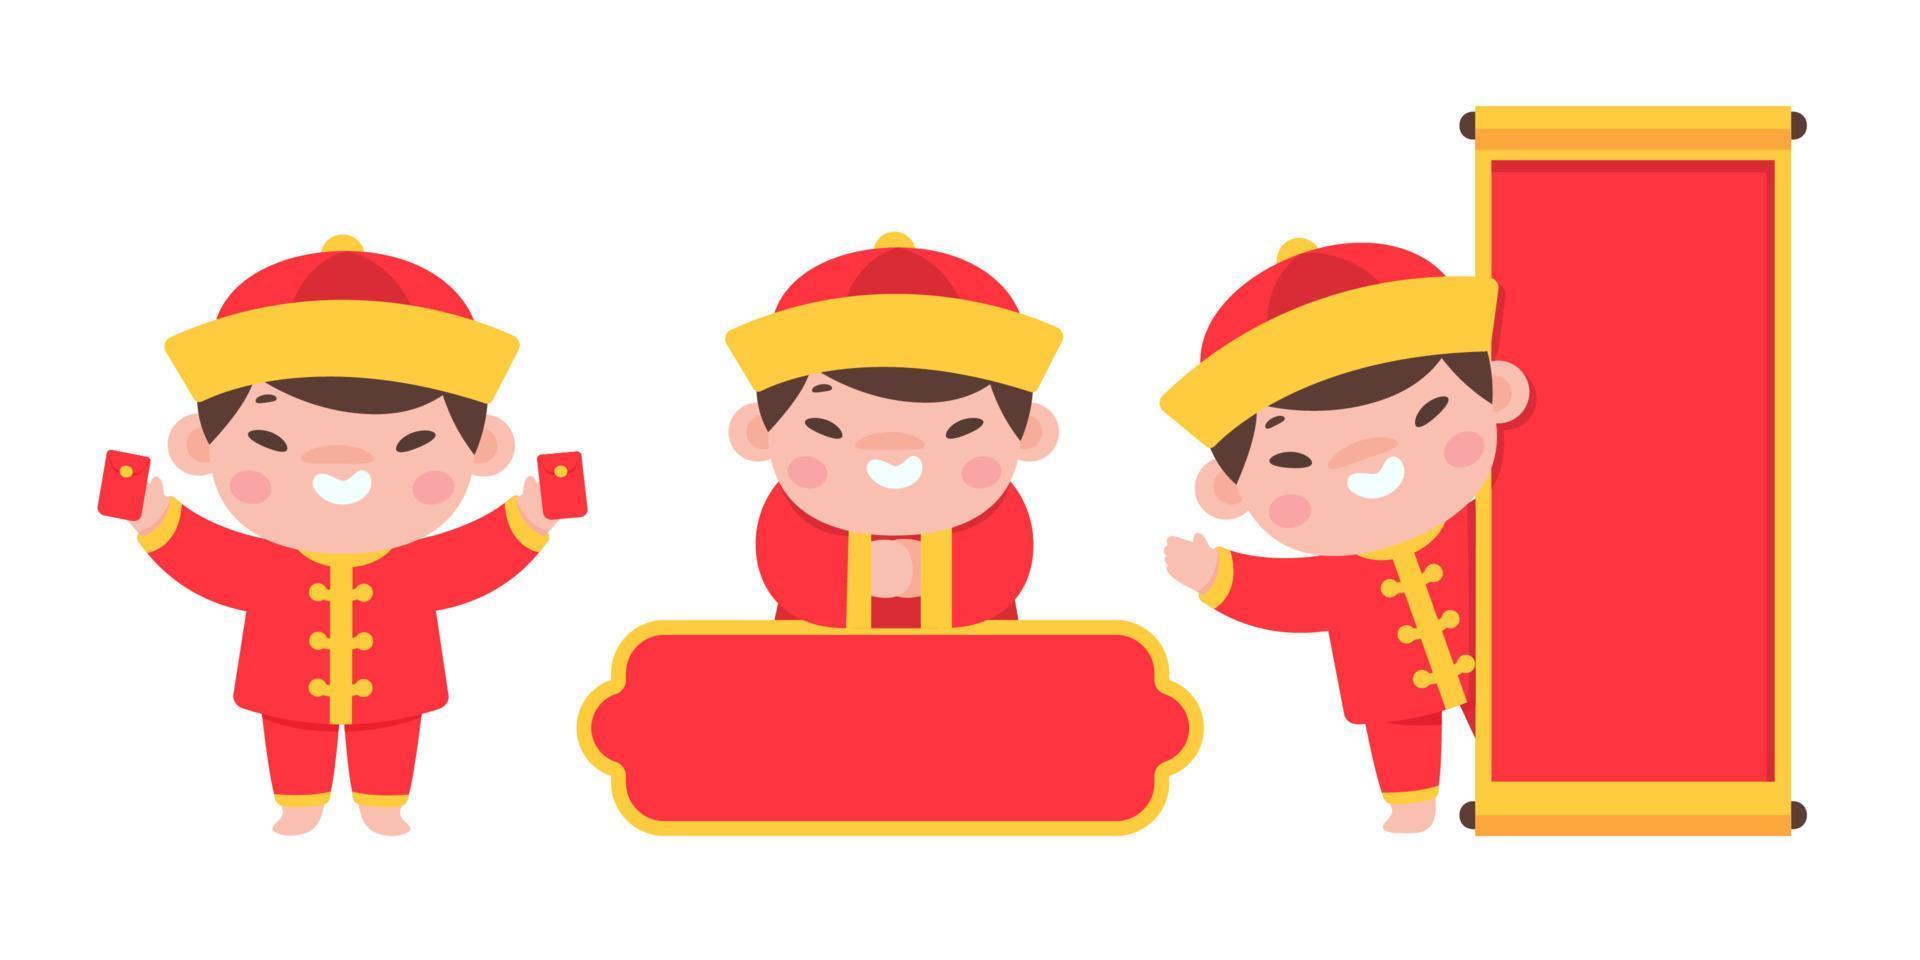 crianças chinesas vestindo trajes nacionais vermelhos comemoram o ano novo chinês vetor